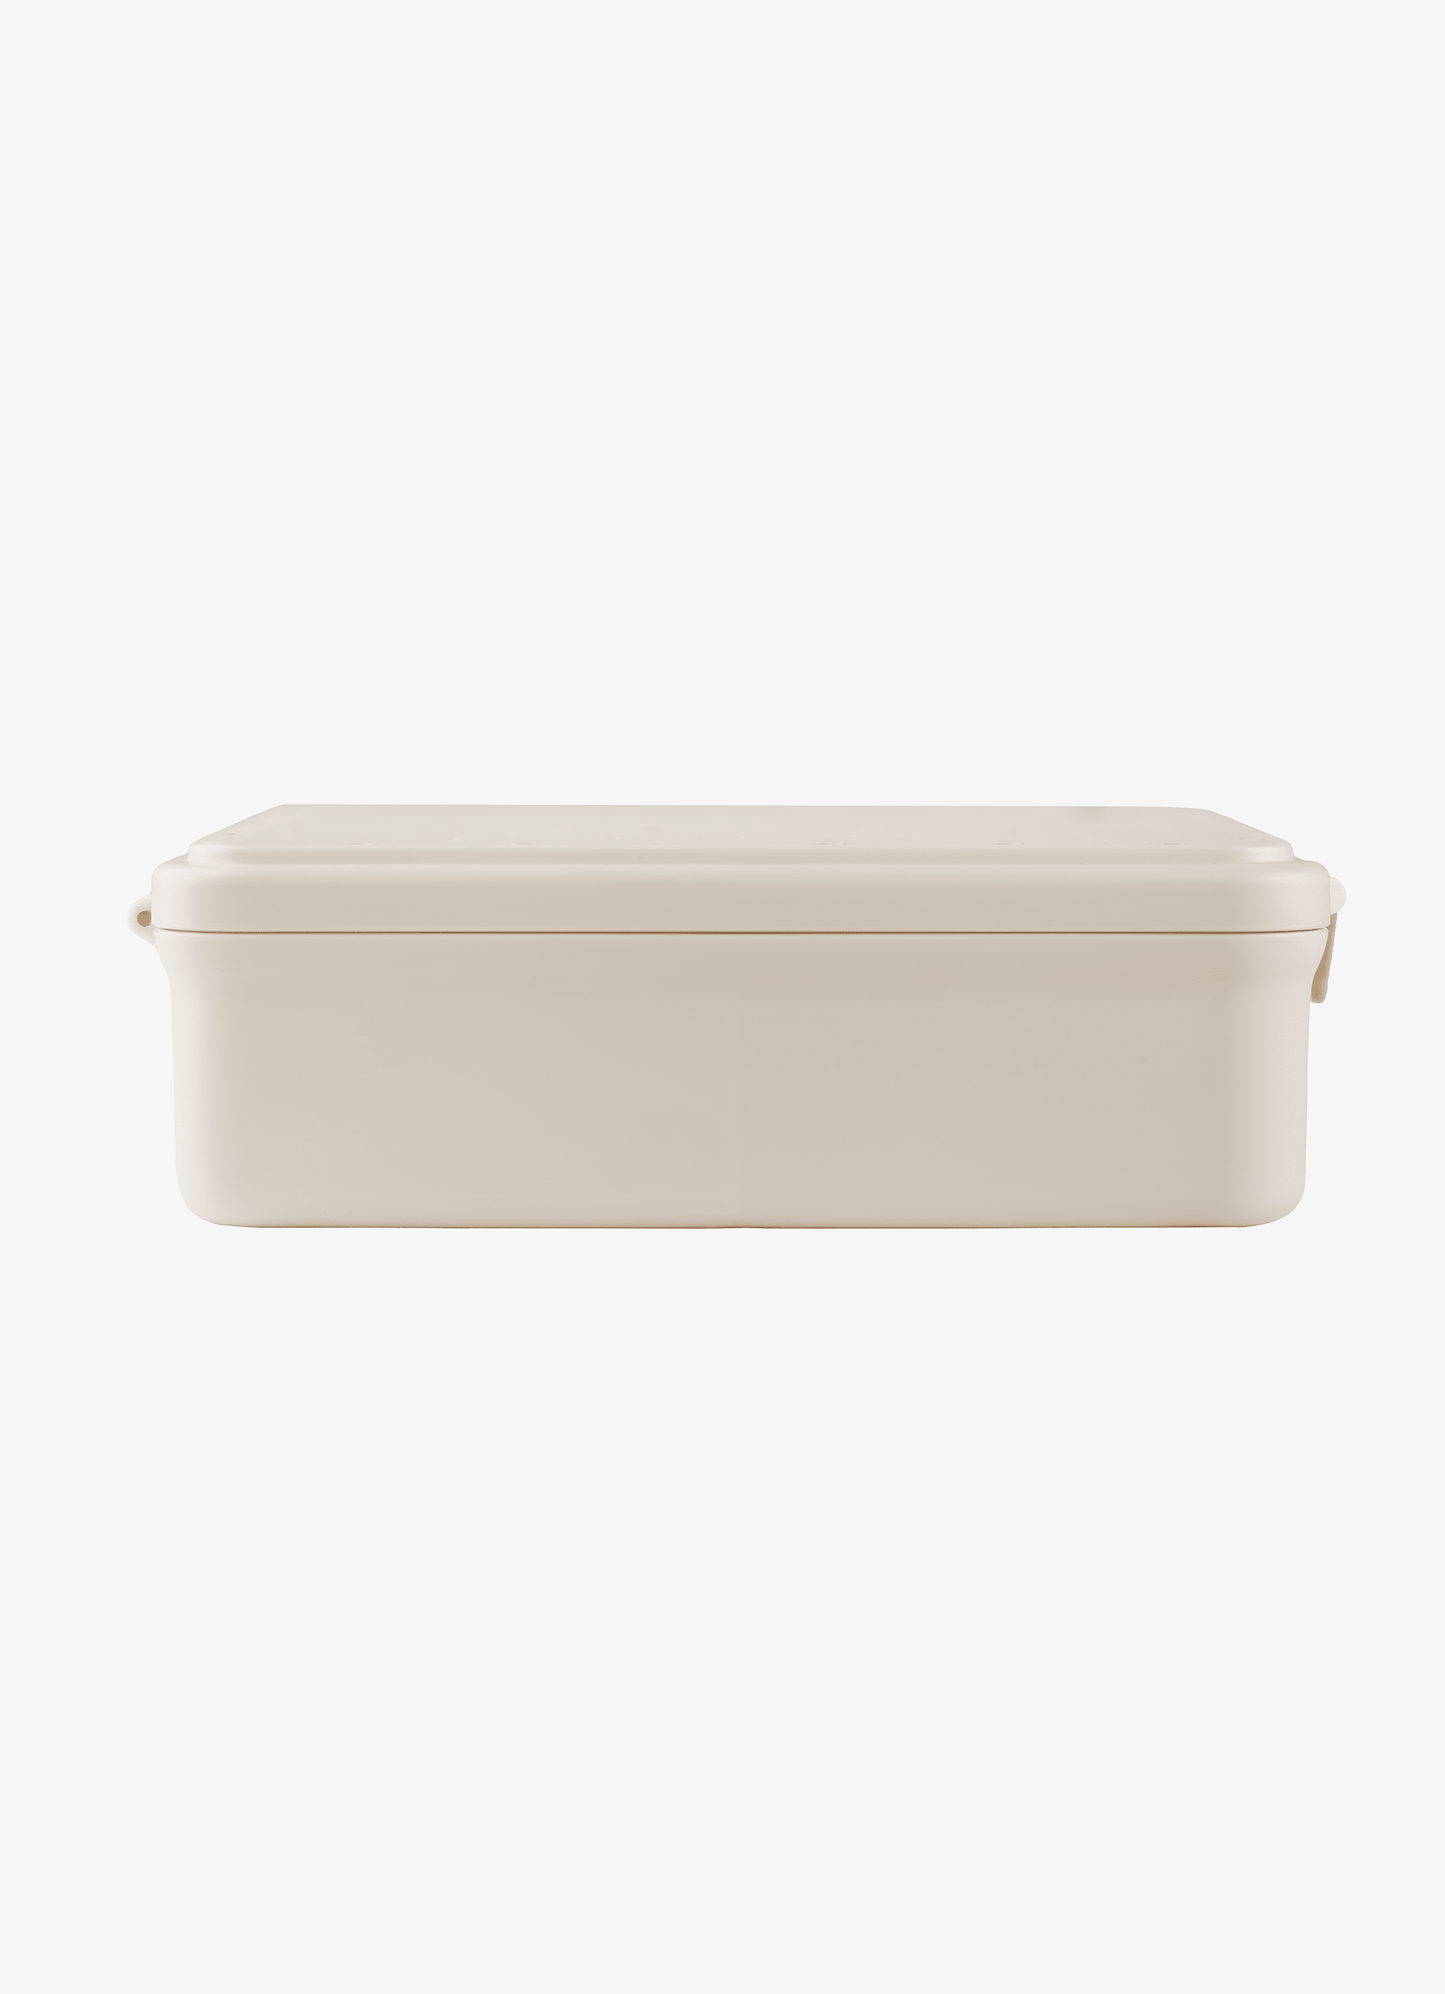 Grand Lunch box - 4 compartments - Unicorn